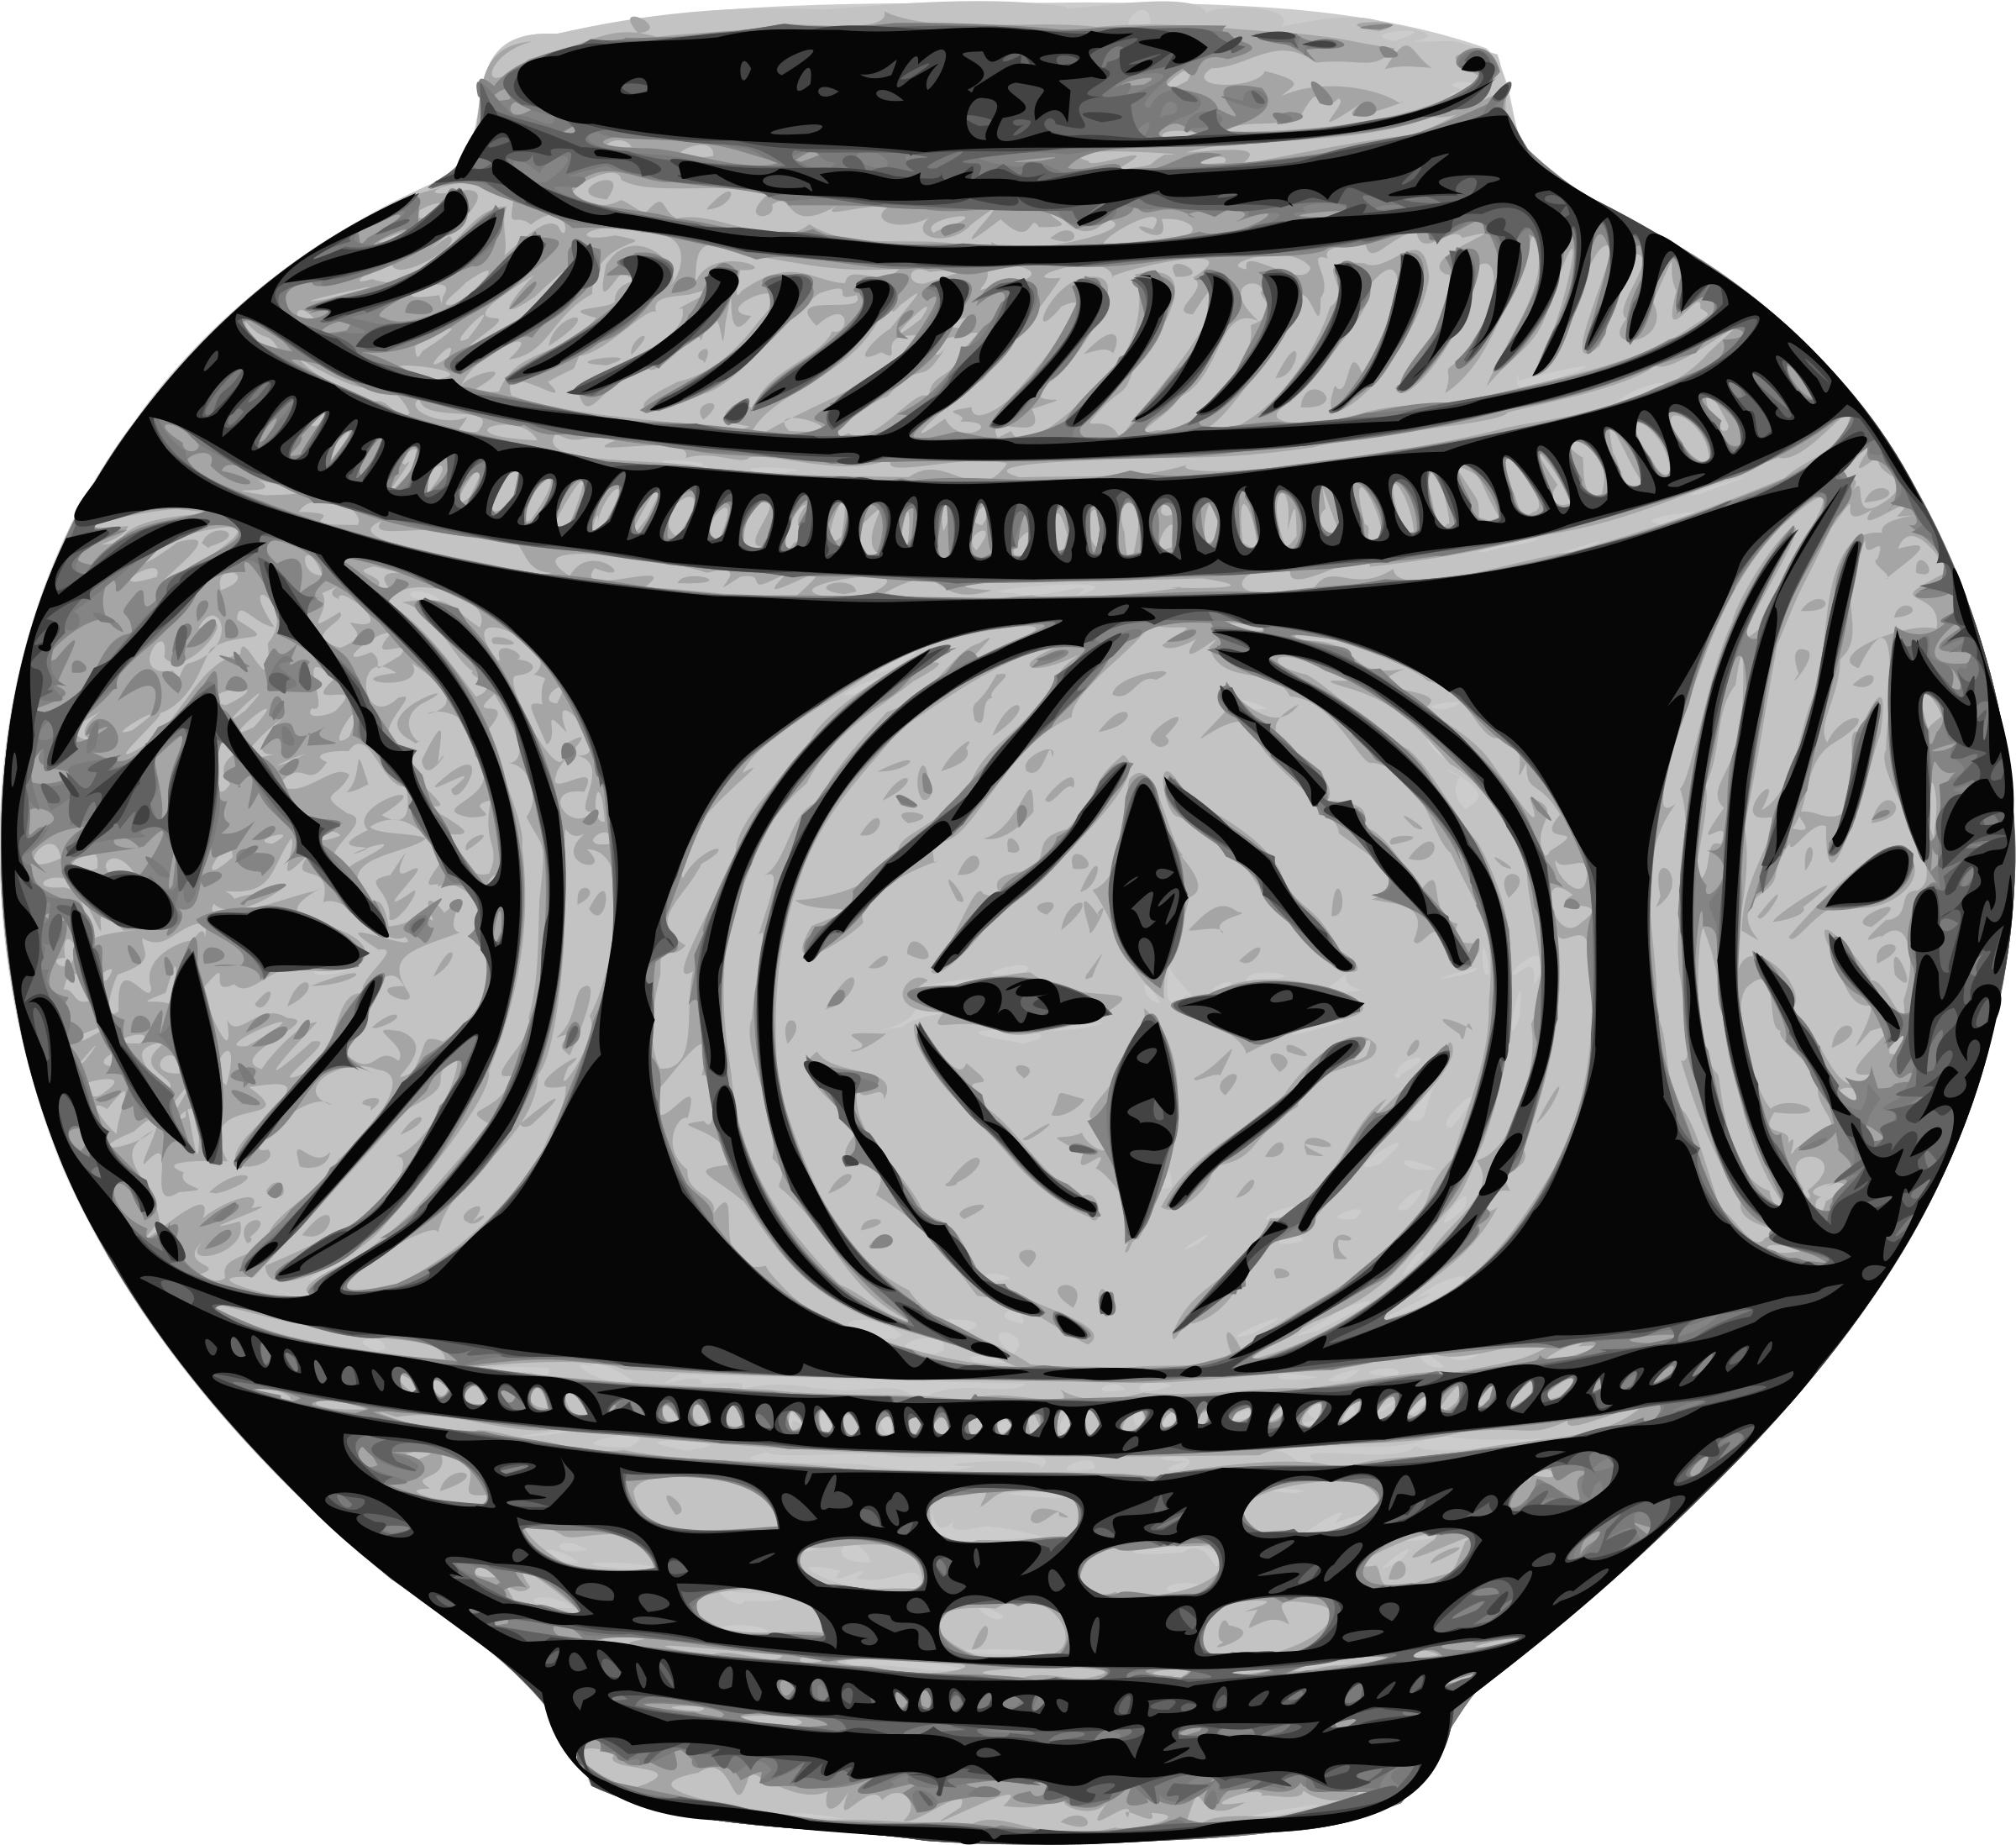 Vase histoire icons